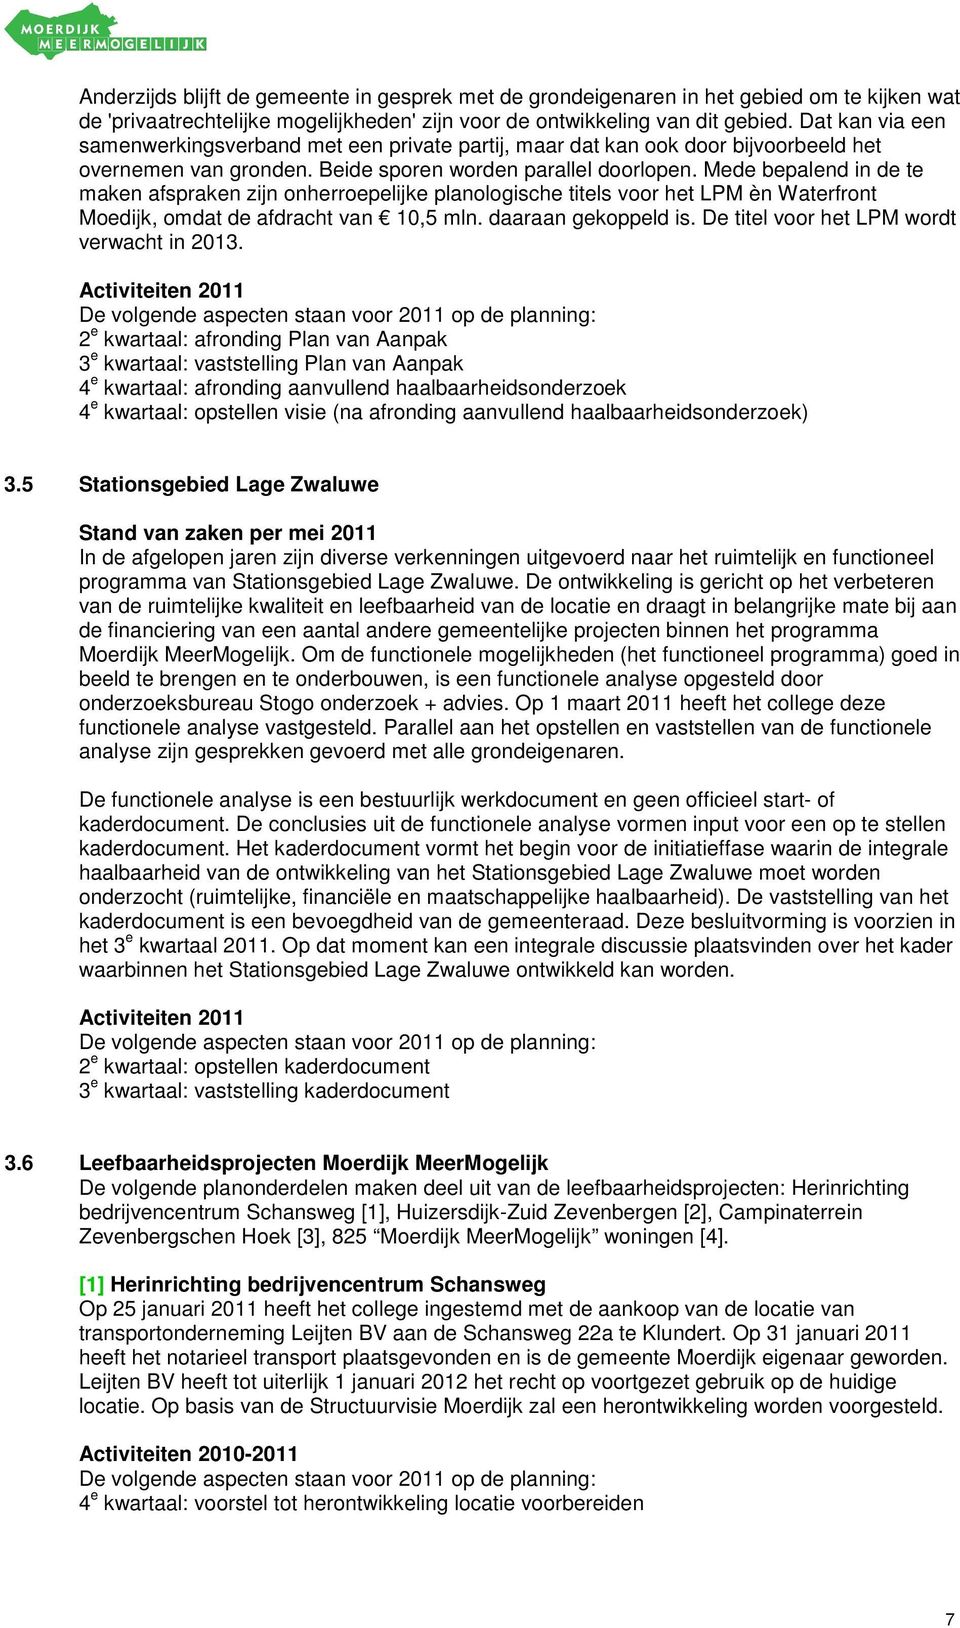 Mede bepalend in de te maken afspraken zijn onherroepelijke planologische titels voor het LPM èn Waterfront Moedijk, omdat de afdracht van 10,5 mln. daaraan gekoppeld is.